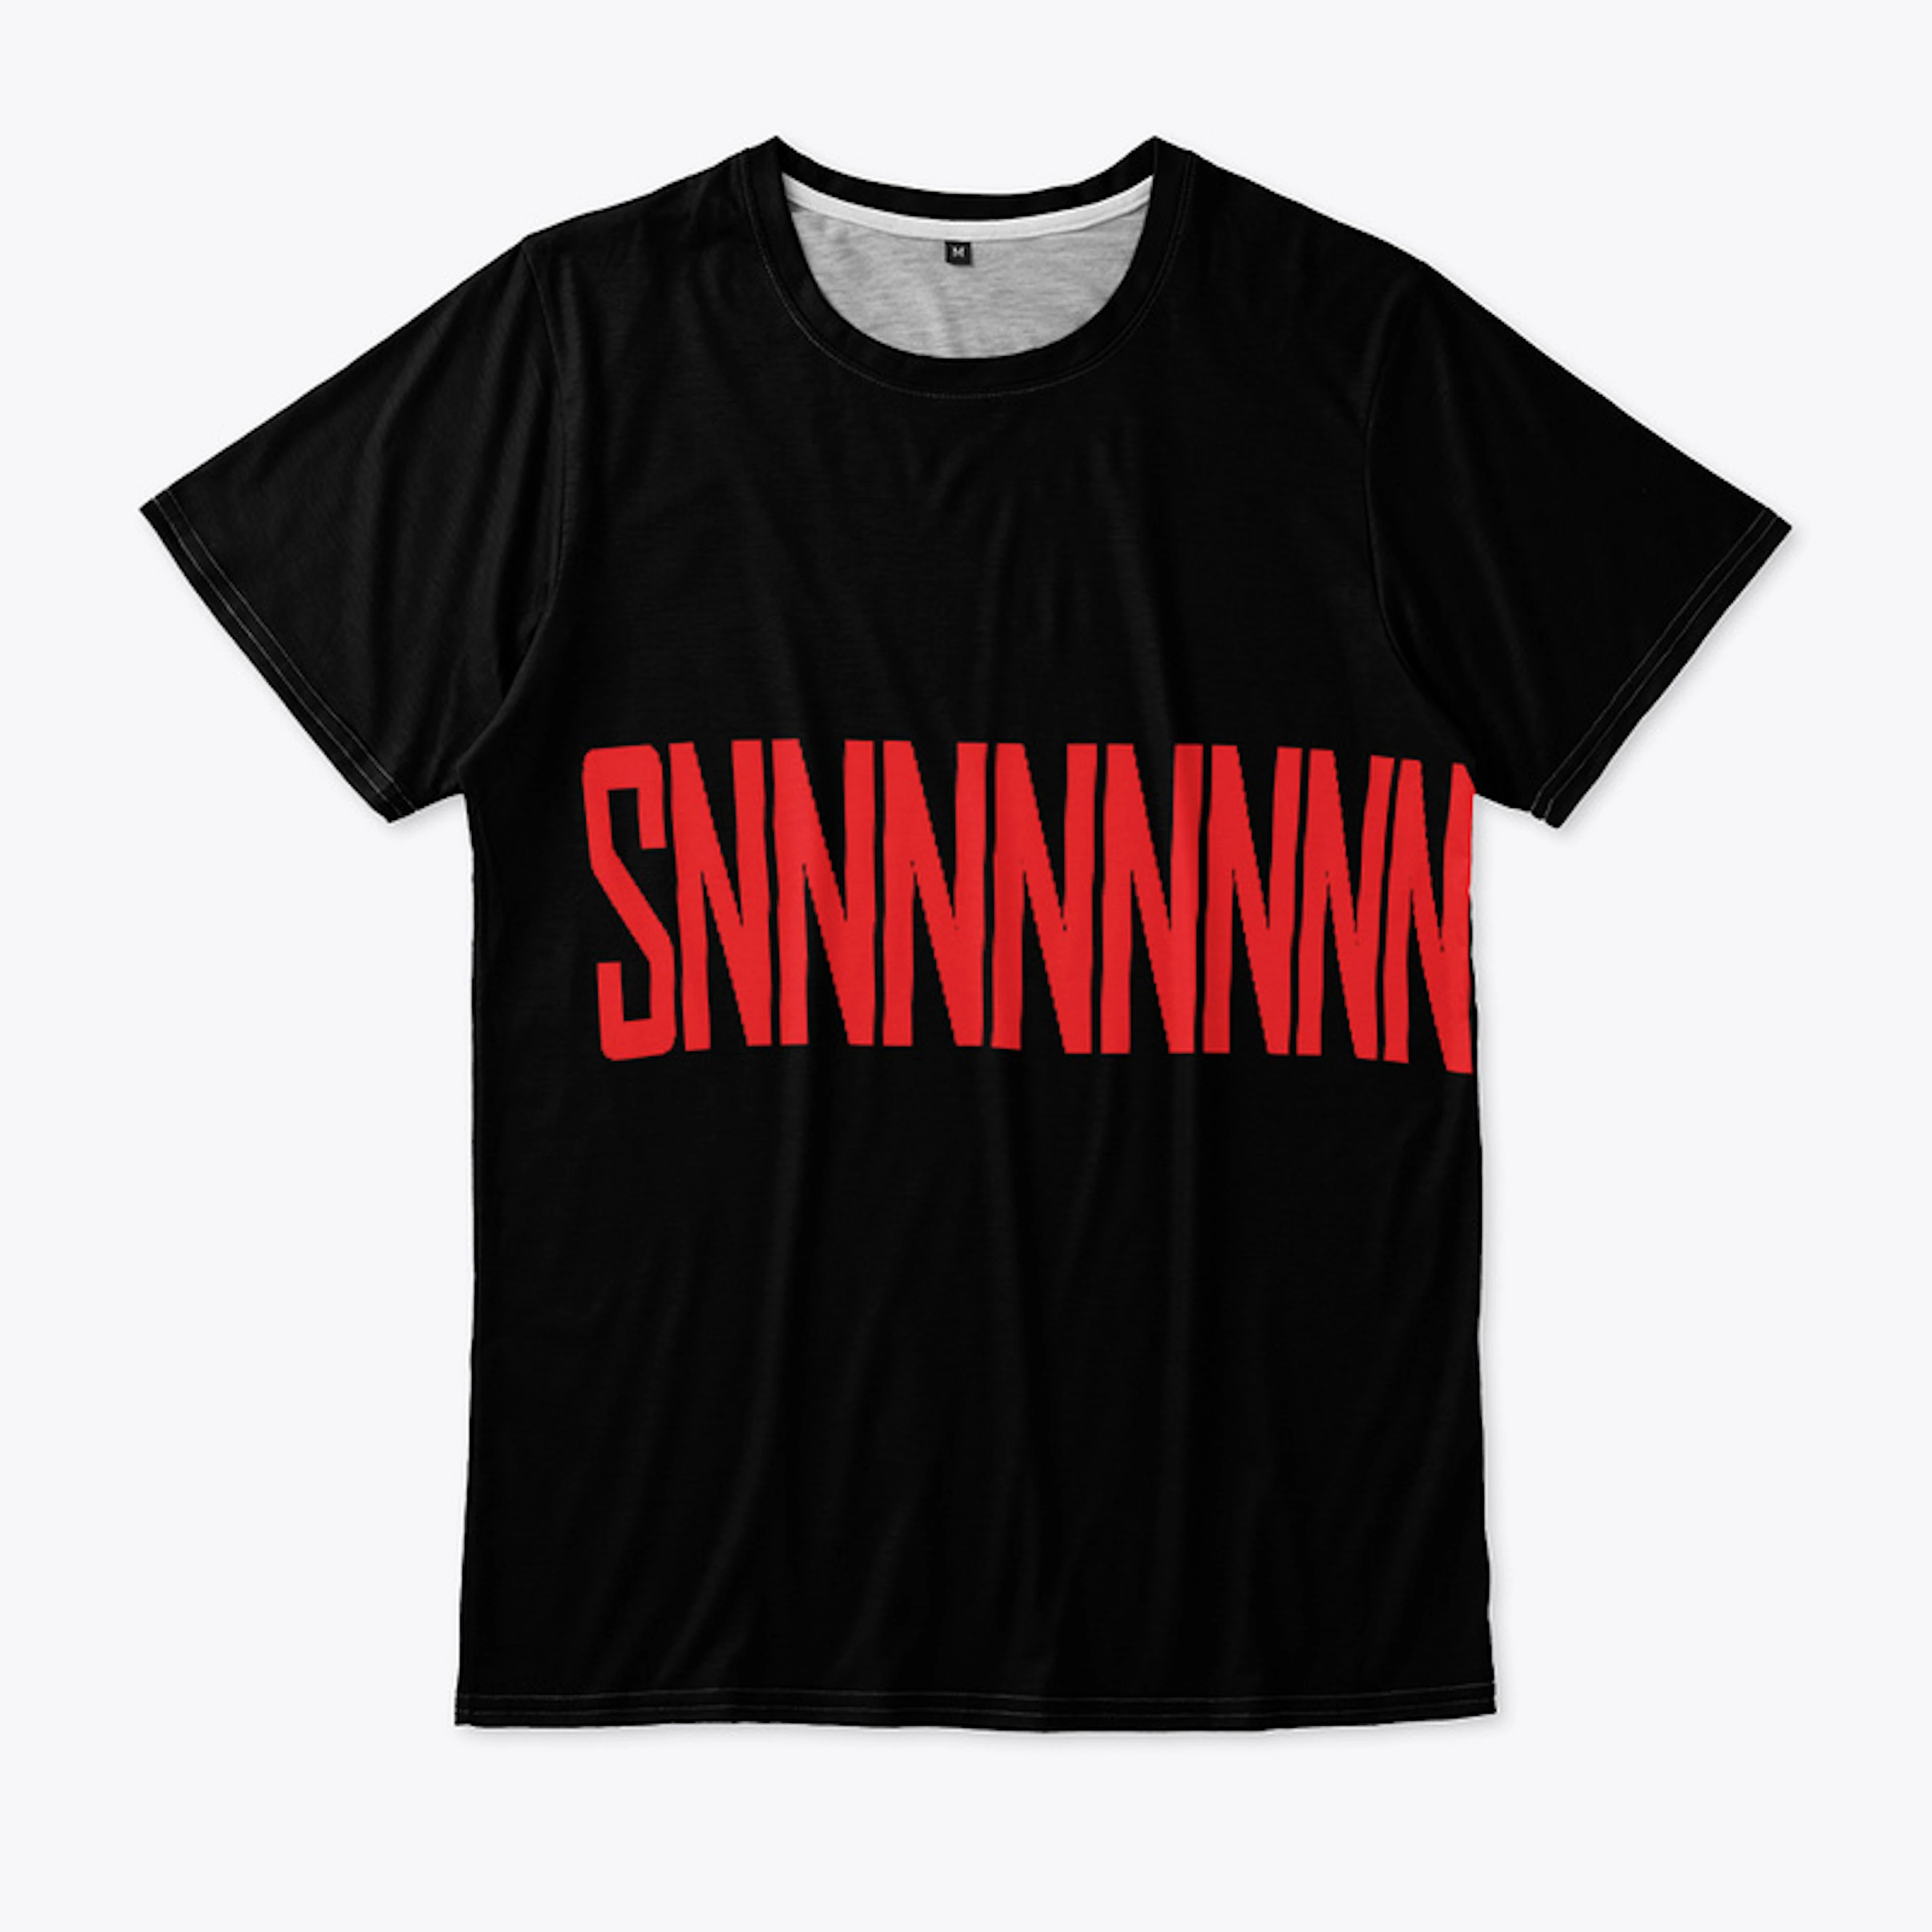 SNNNNNNNNNESdrunk Design T-Shirt